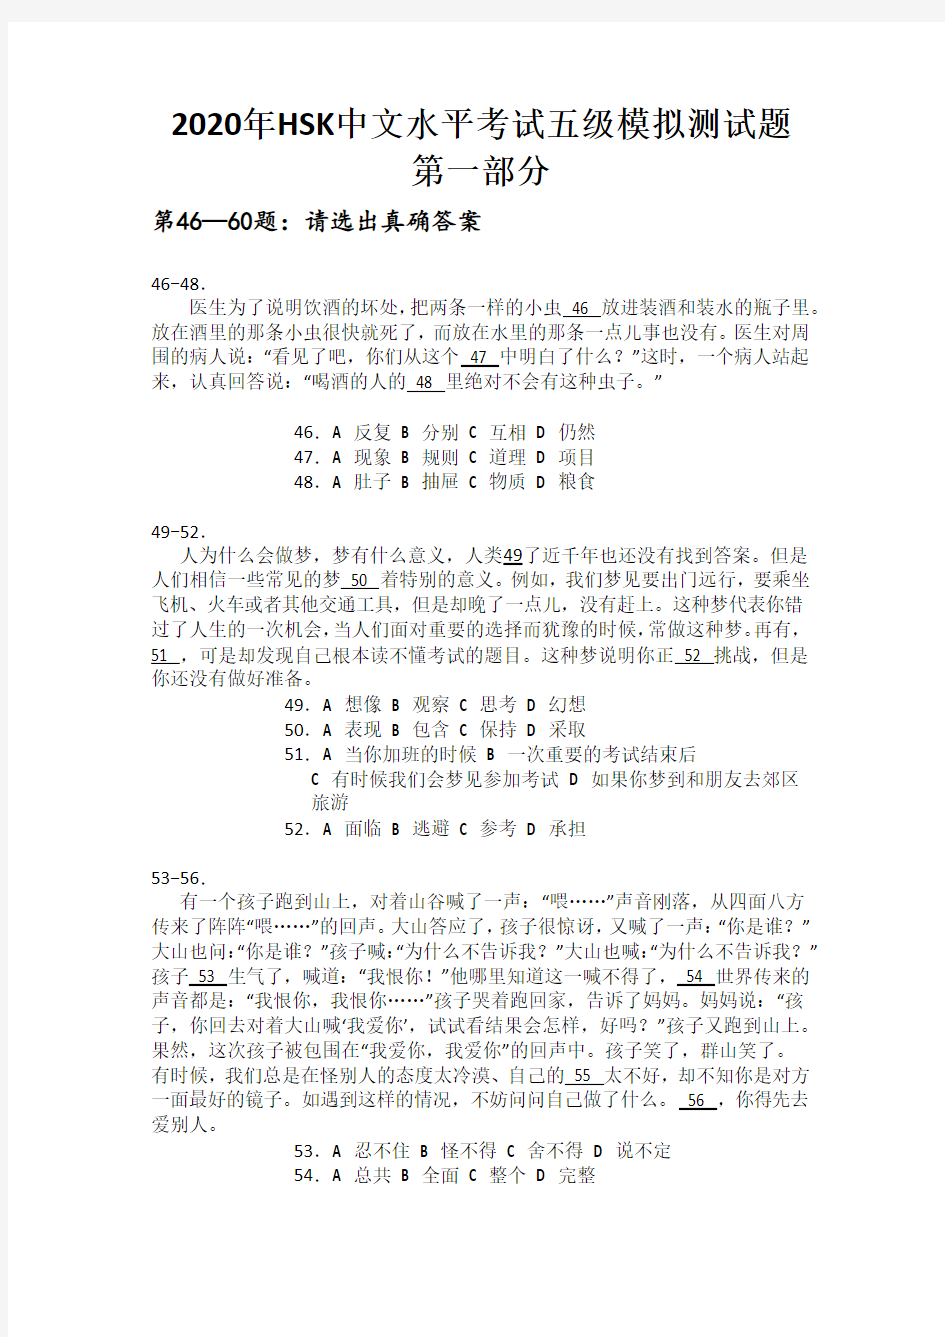 2020年HSK中文水平考试五级模拟测试题